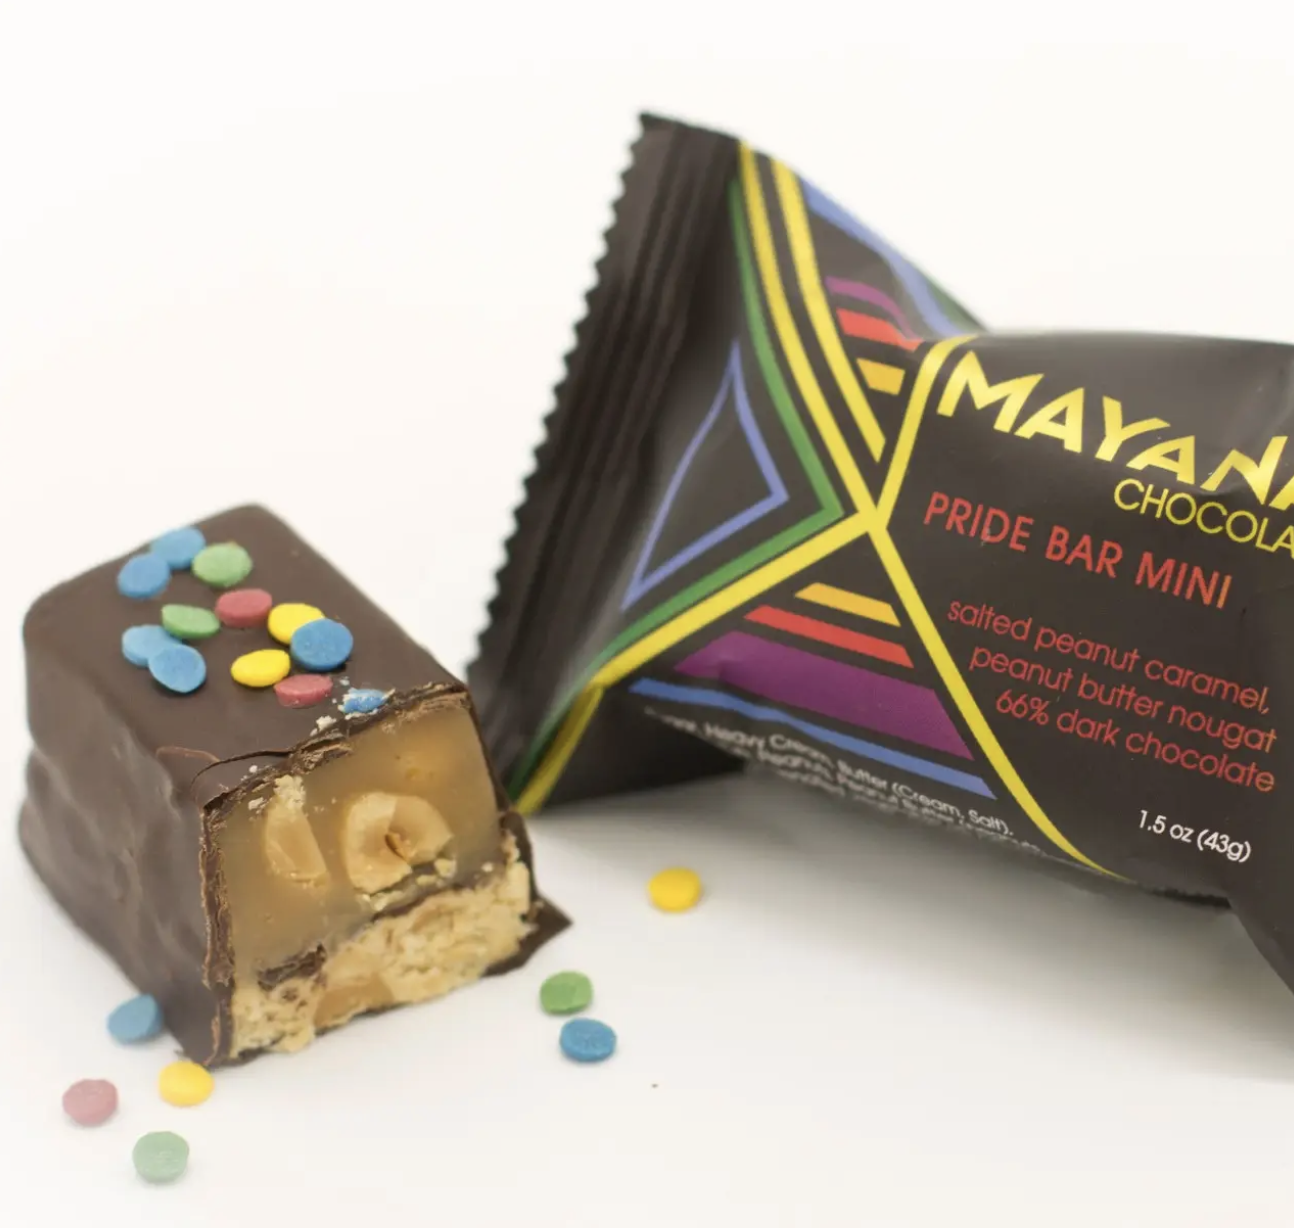 Mayana Chocolate: Pride Mini Bar